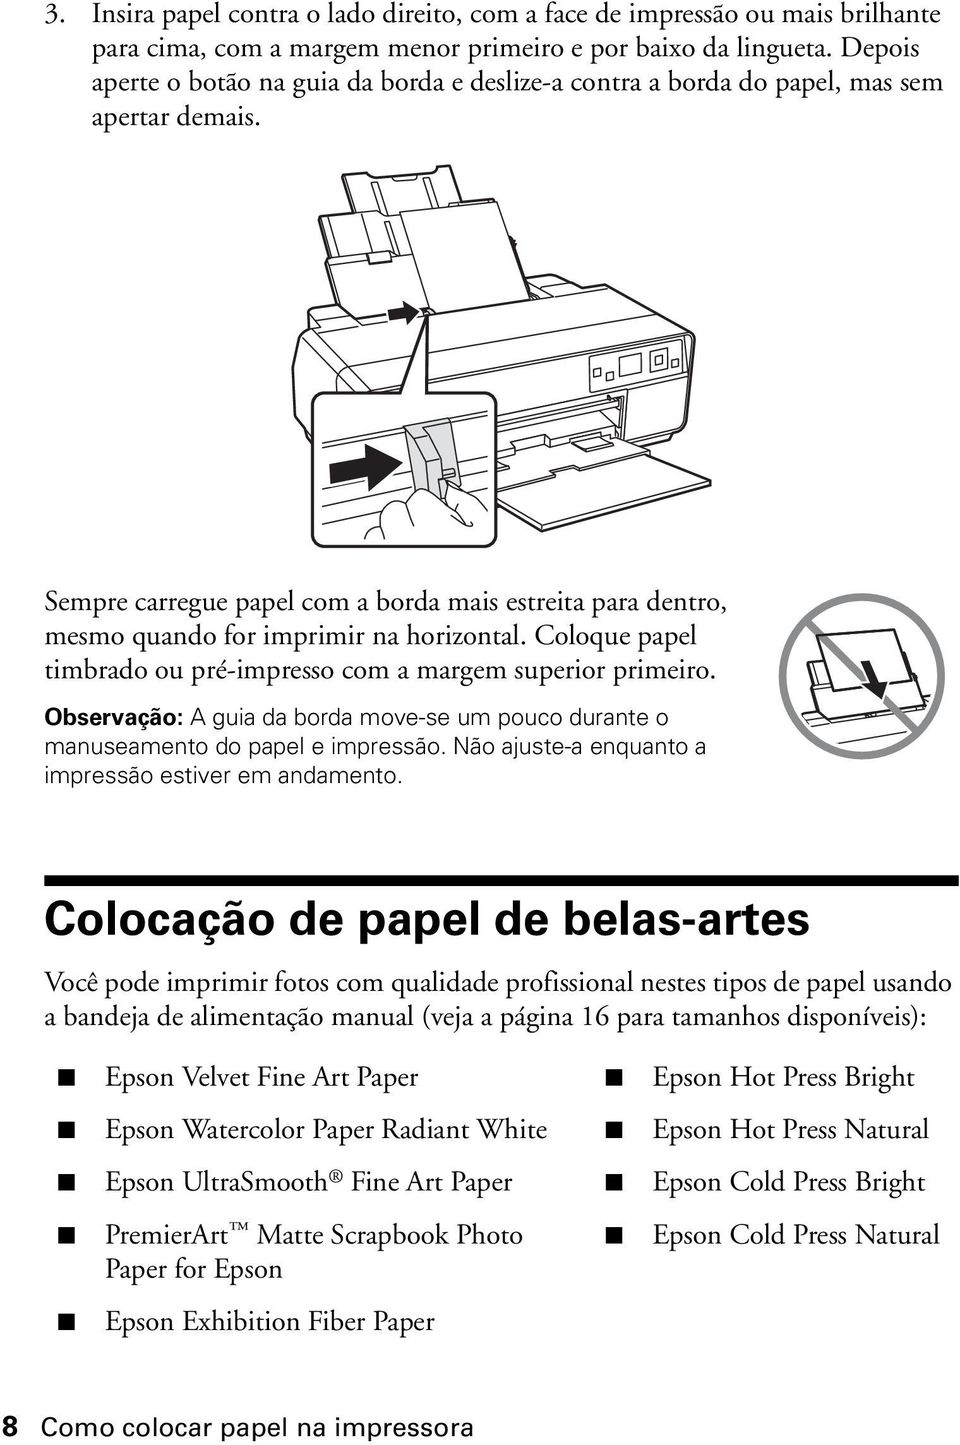 Sempre carregue papel com a borda mais estreita para dentro, mesmo quando for imprimir na horizontal. Coloque papel timbrado ou pré-impresso com a margem superior primeiro.